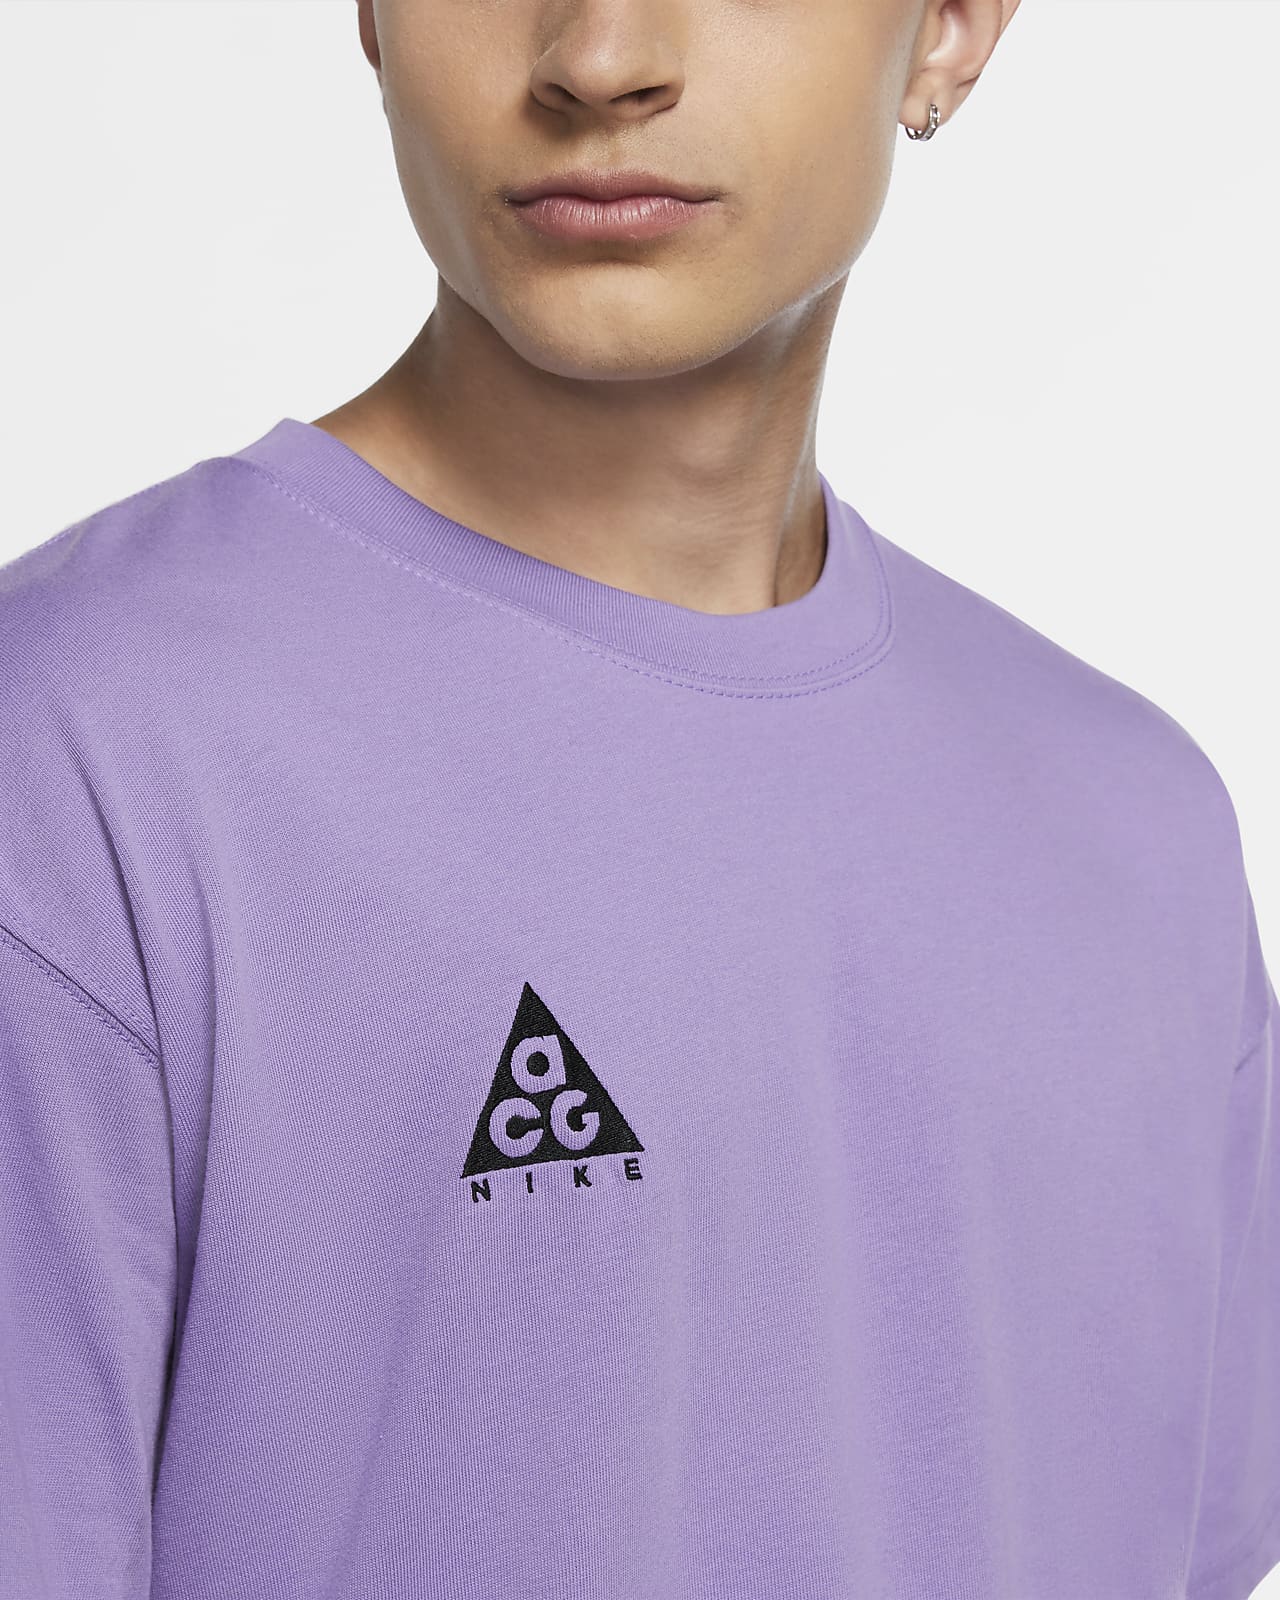 atomic violet shirt